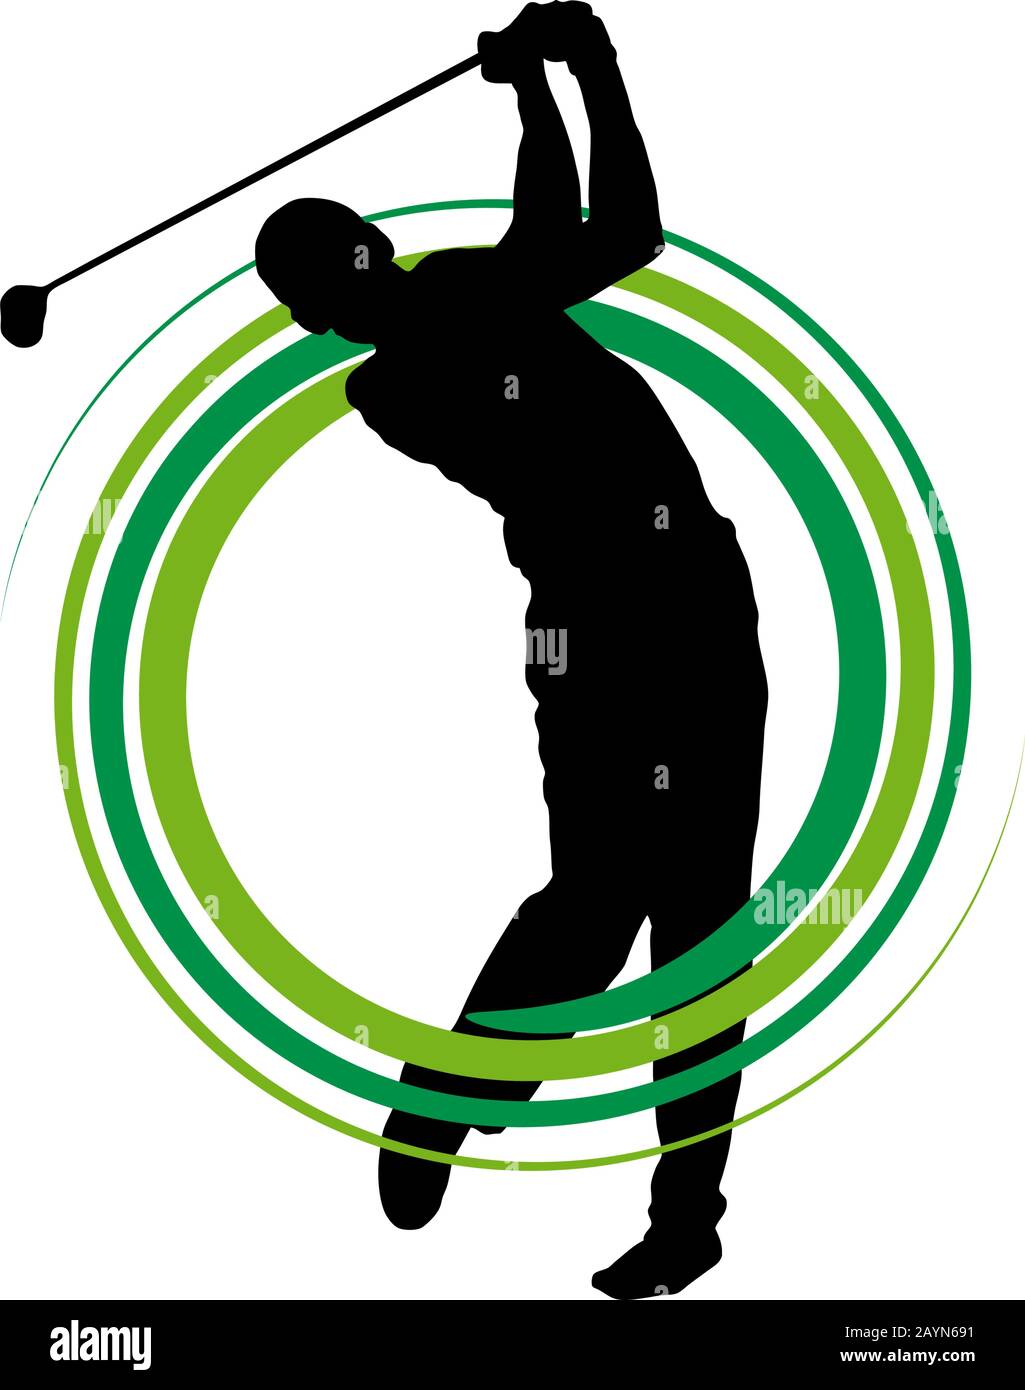 Turnierhintergrund für den Golfclub Wettbewerb. Vektor-Zeichen mit Mann, der auf Grün spielt Stock Vektor